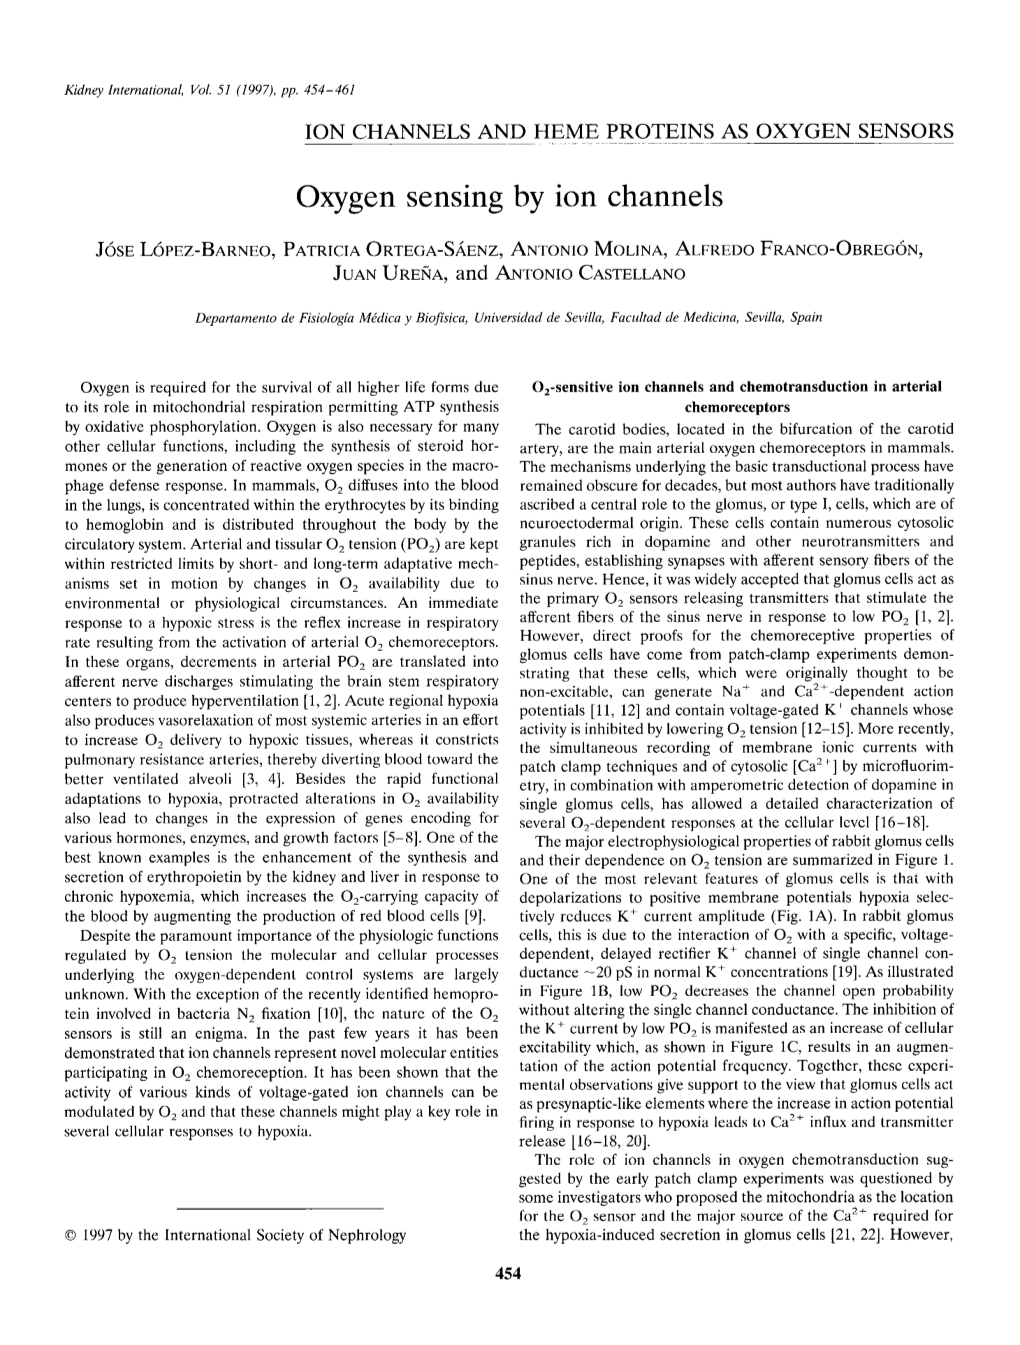 Oxygen Sensing by Ion Channels